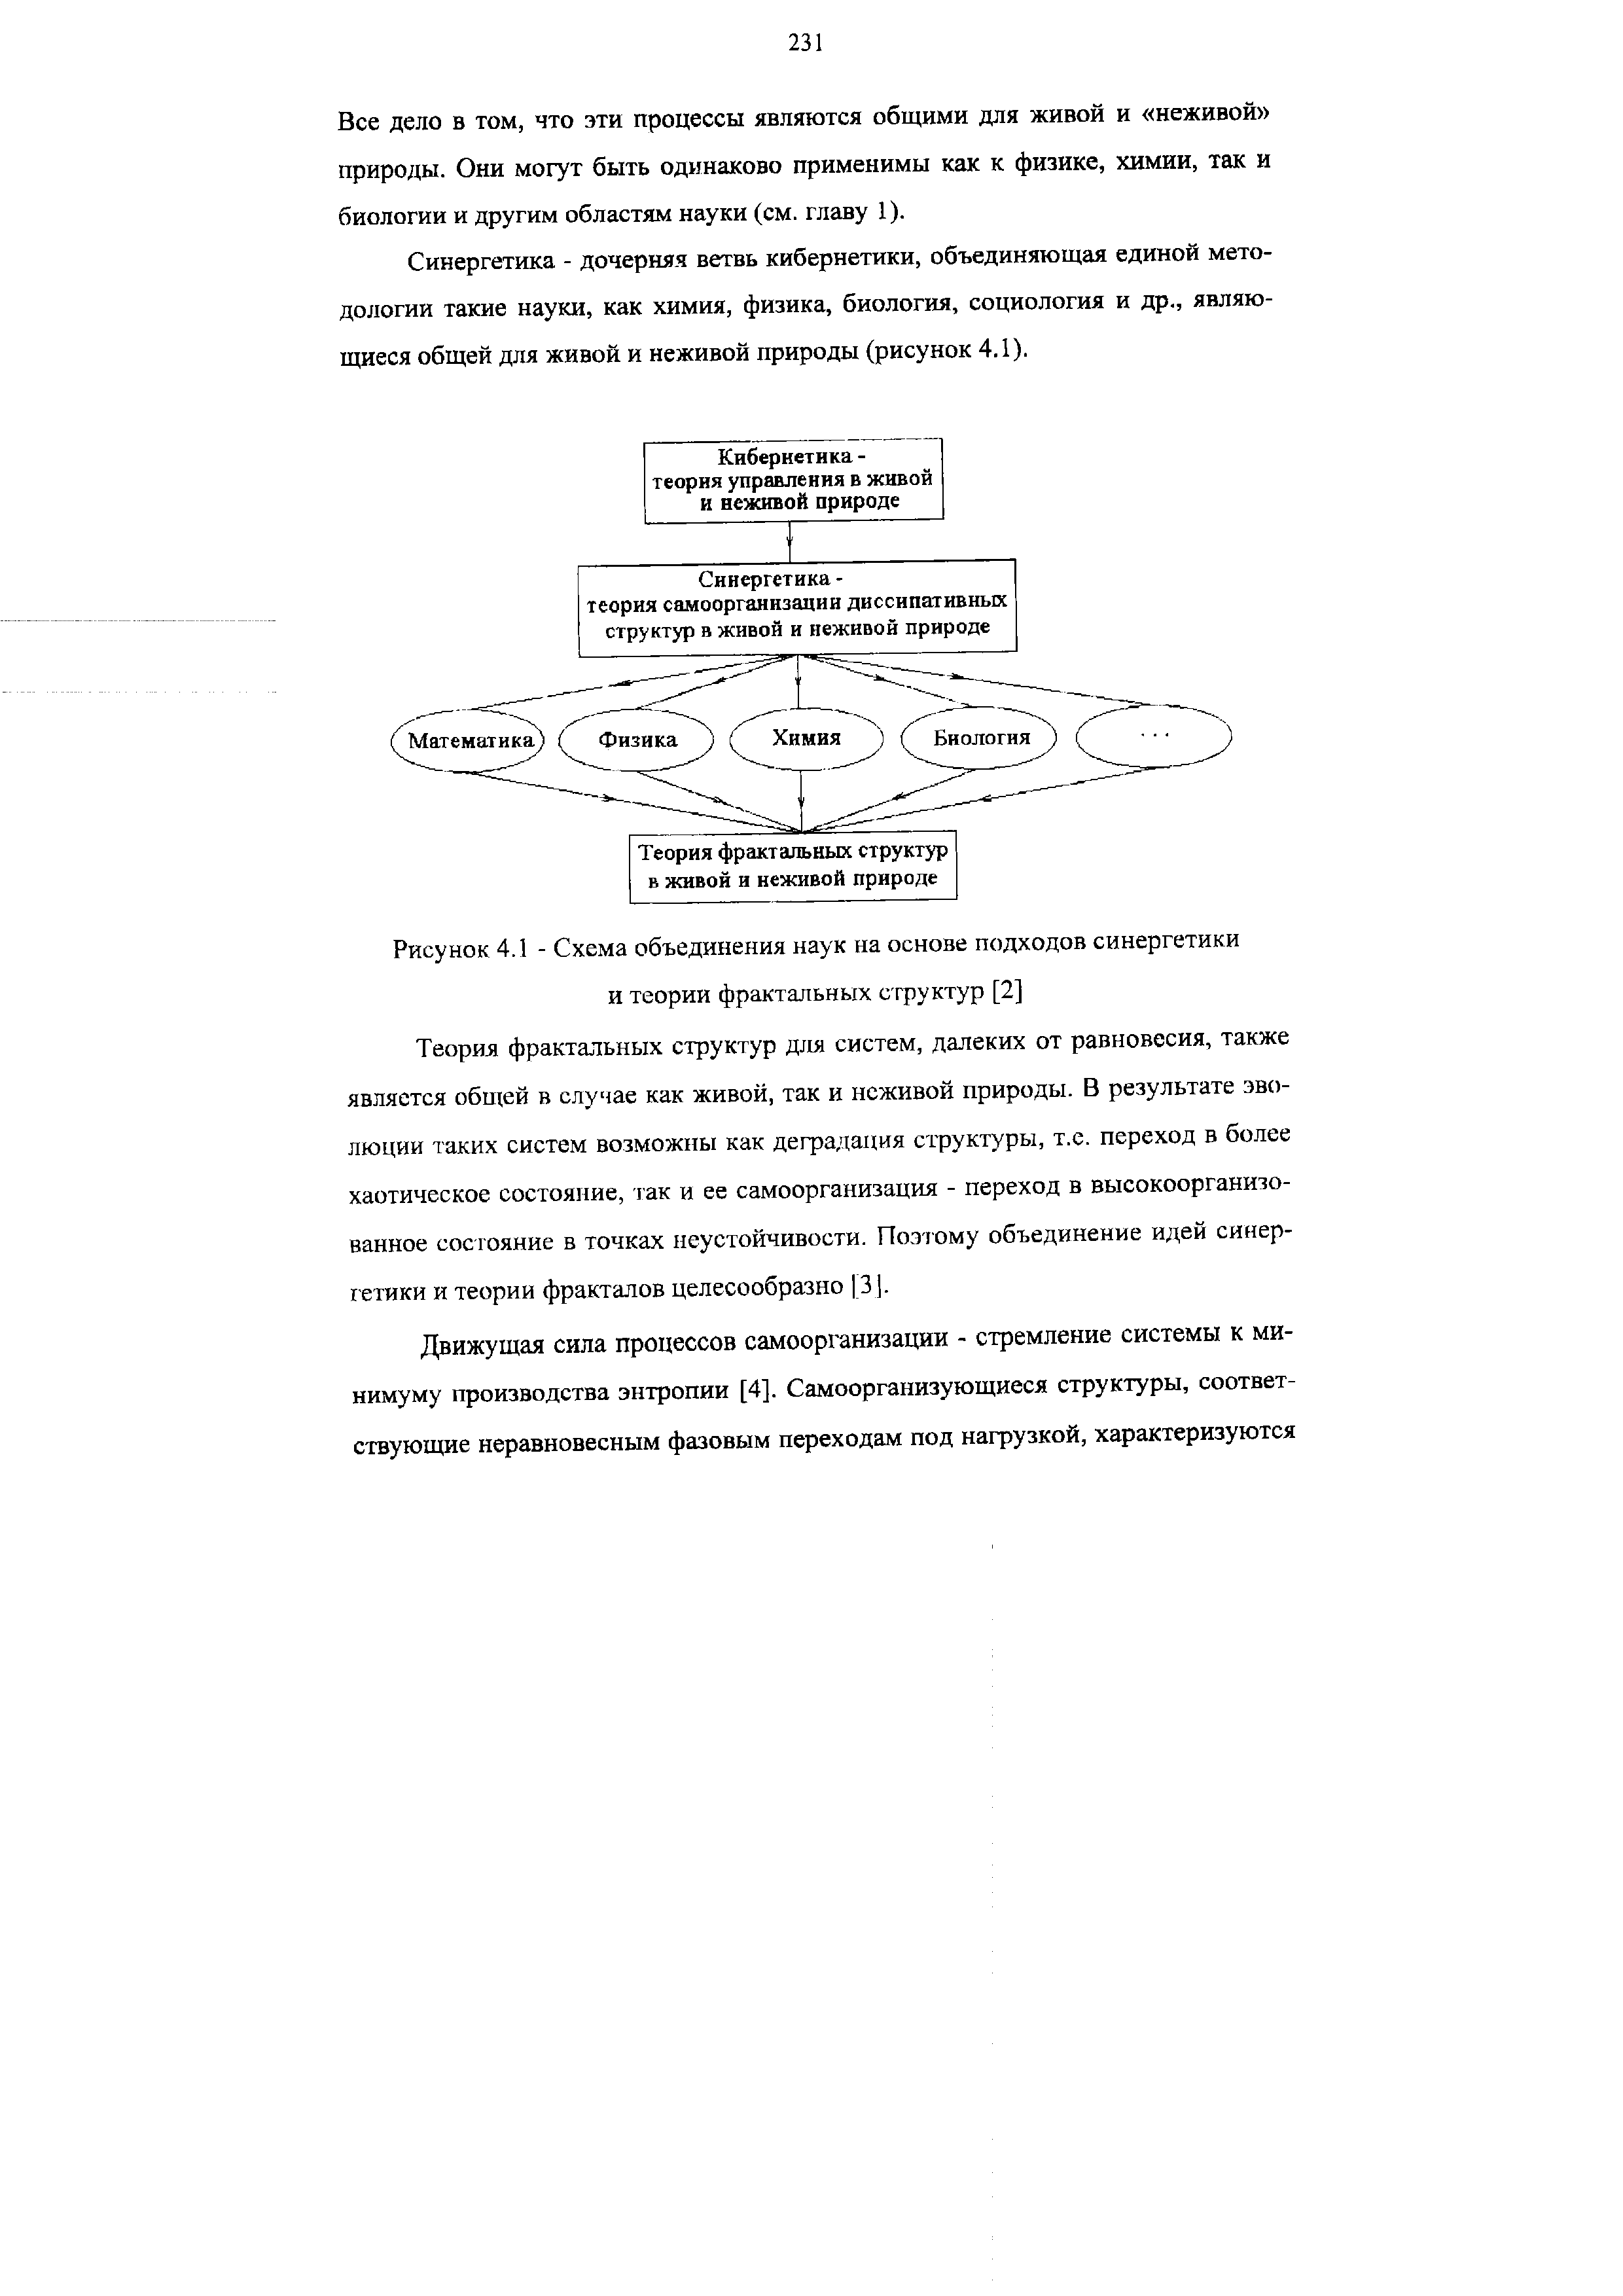 Рисунок 4.1 - Схема объединения наук на основе подходов синергетики и теории фрактальных структур [2]
